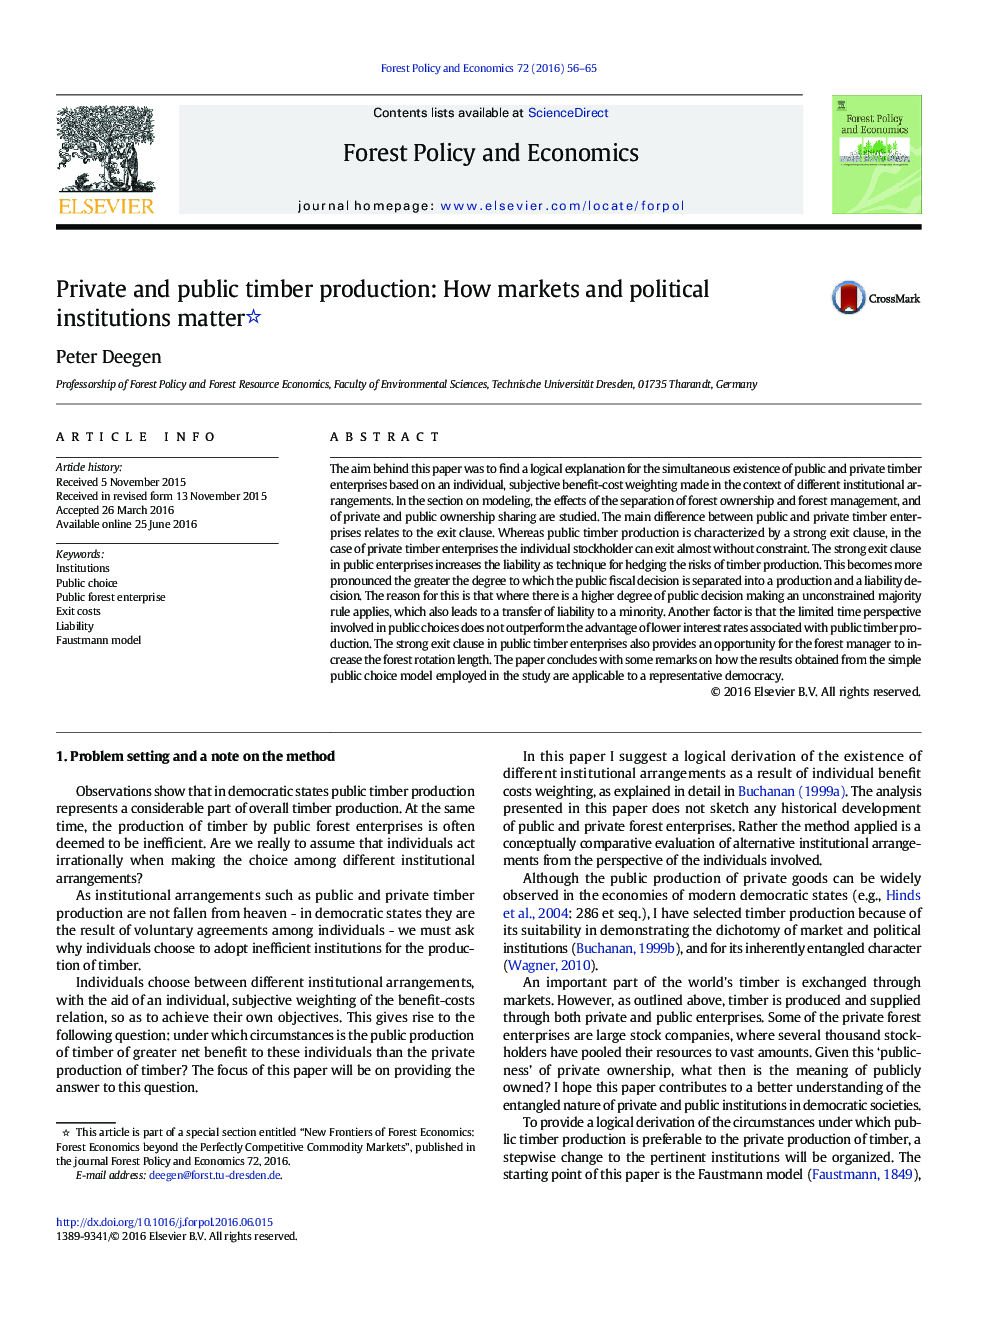 تولید لودر خصوصی و عمومی: چگونه بازارهای و نهادهای سیاسی مهم هستند 